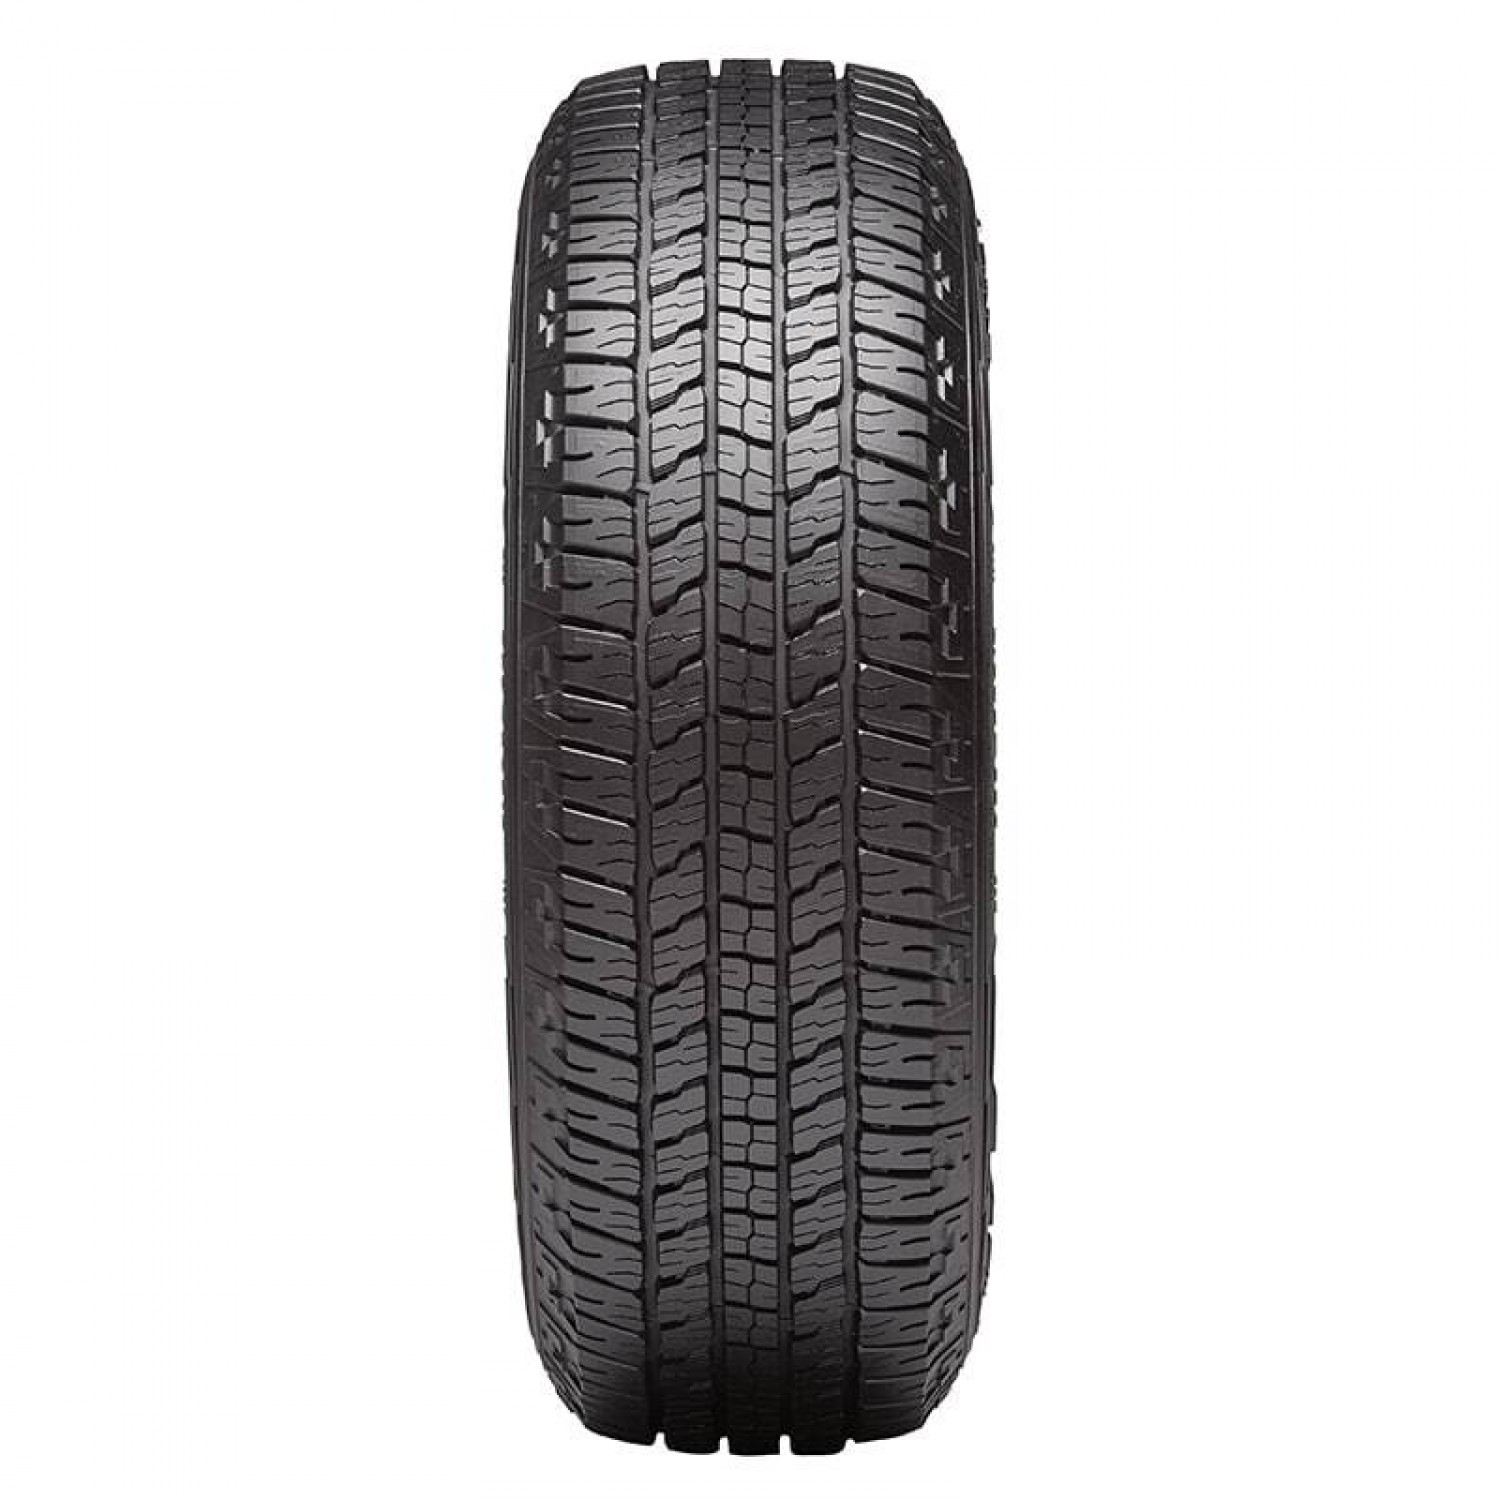 Goodyear Wrangler Fortitude HT Black Sidewall Tire (255/65R17 110T)  vzn121208